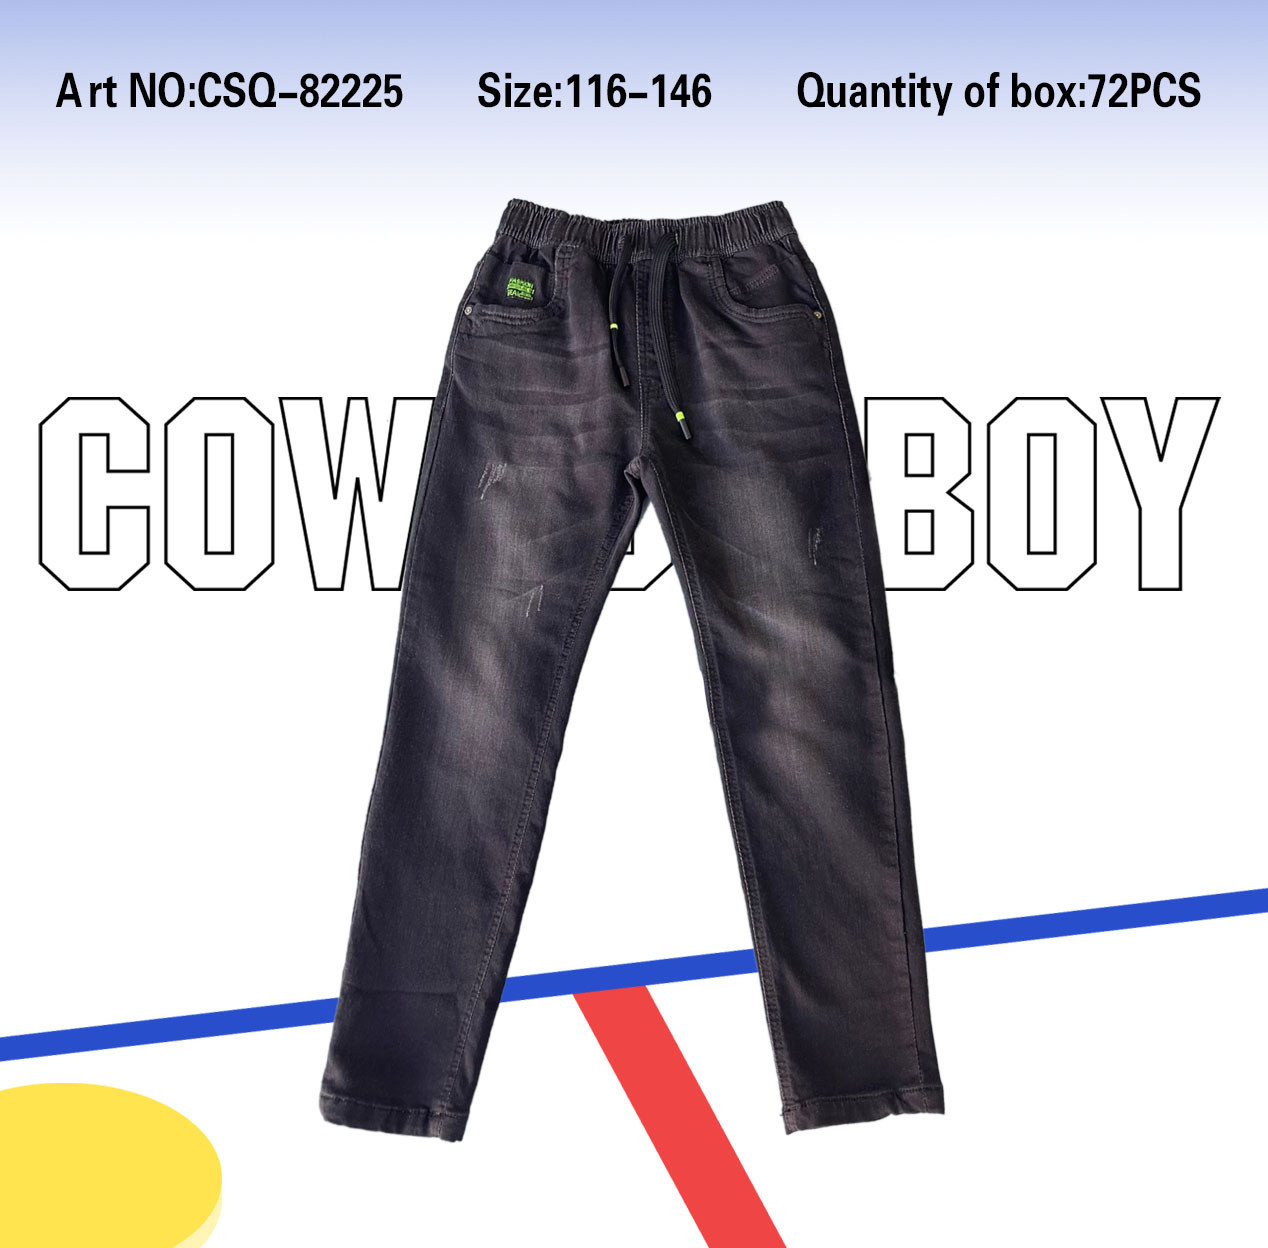 Джинсові штани для хлопчиків Seagull, Артикул: CSQ82225,116-146 рр, [є:122]